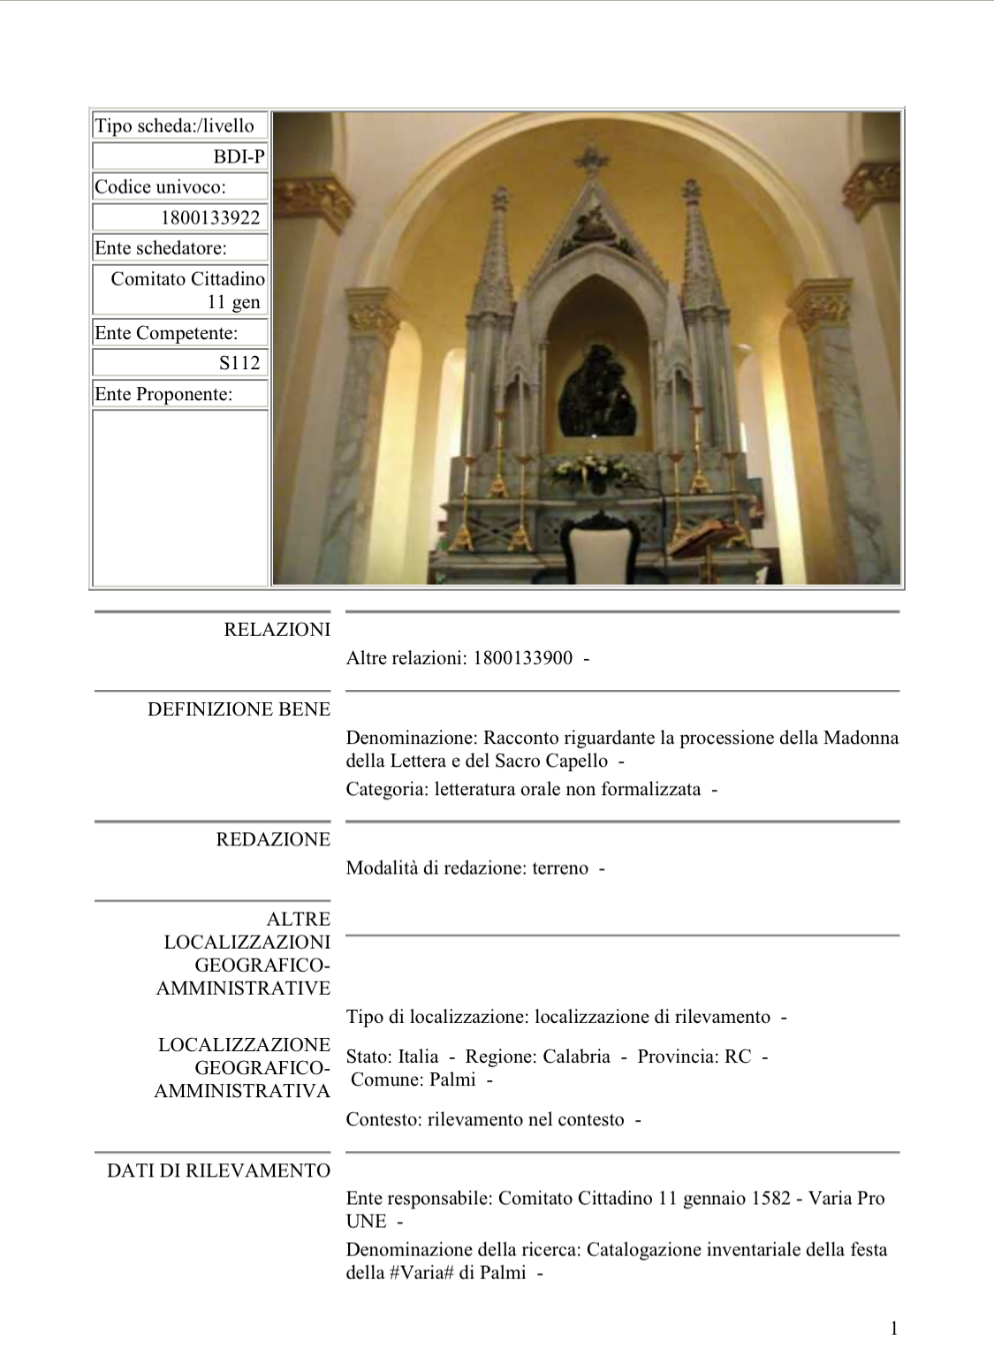 Racconto riguardante la processione della Madonna della Lettera e del Sacro Capello AS Sezione di Palmi, Deposito Carteggio UNESCO Comitato Cittadino ‘’11 aprile 1582’’, b.1, scheda DBI-P 07